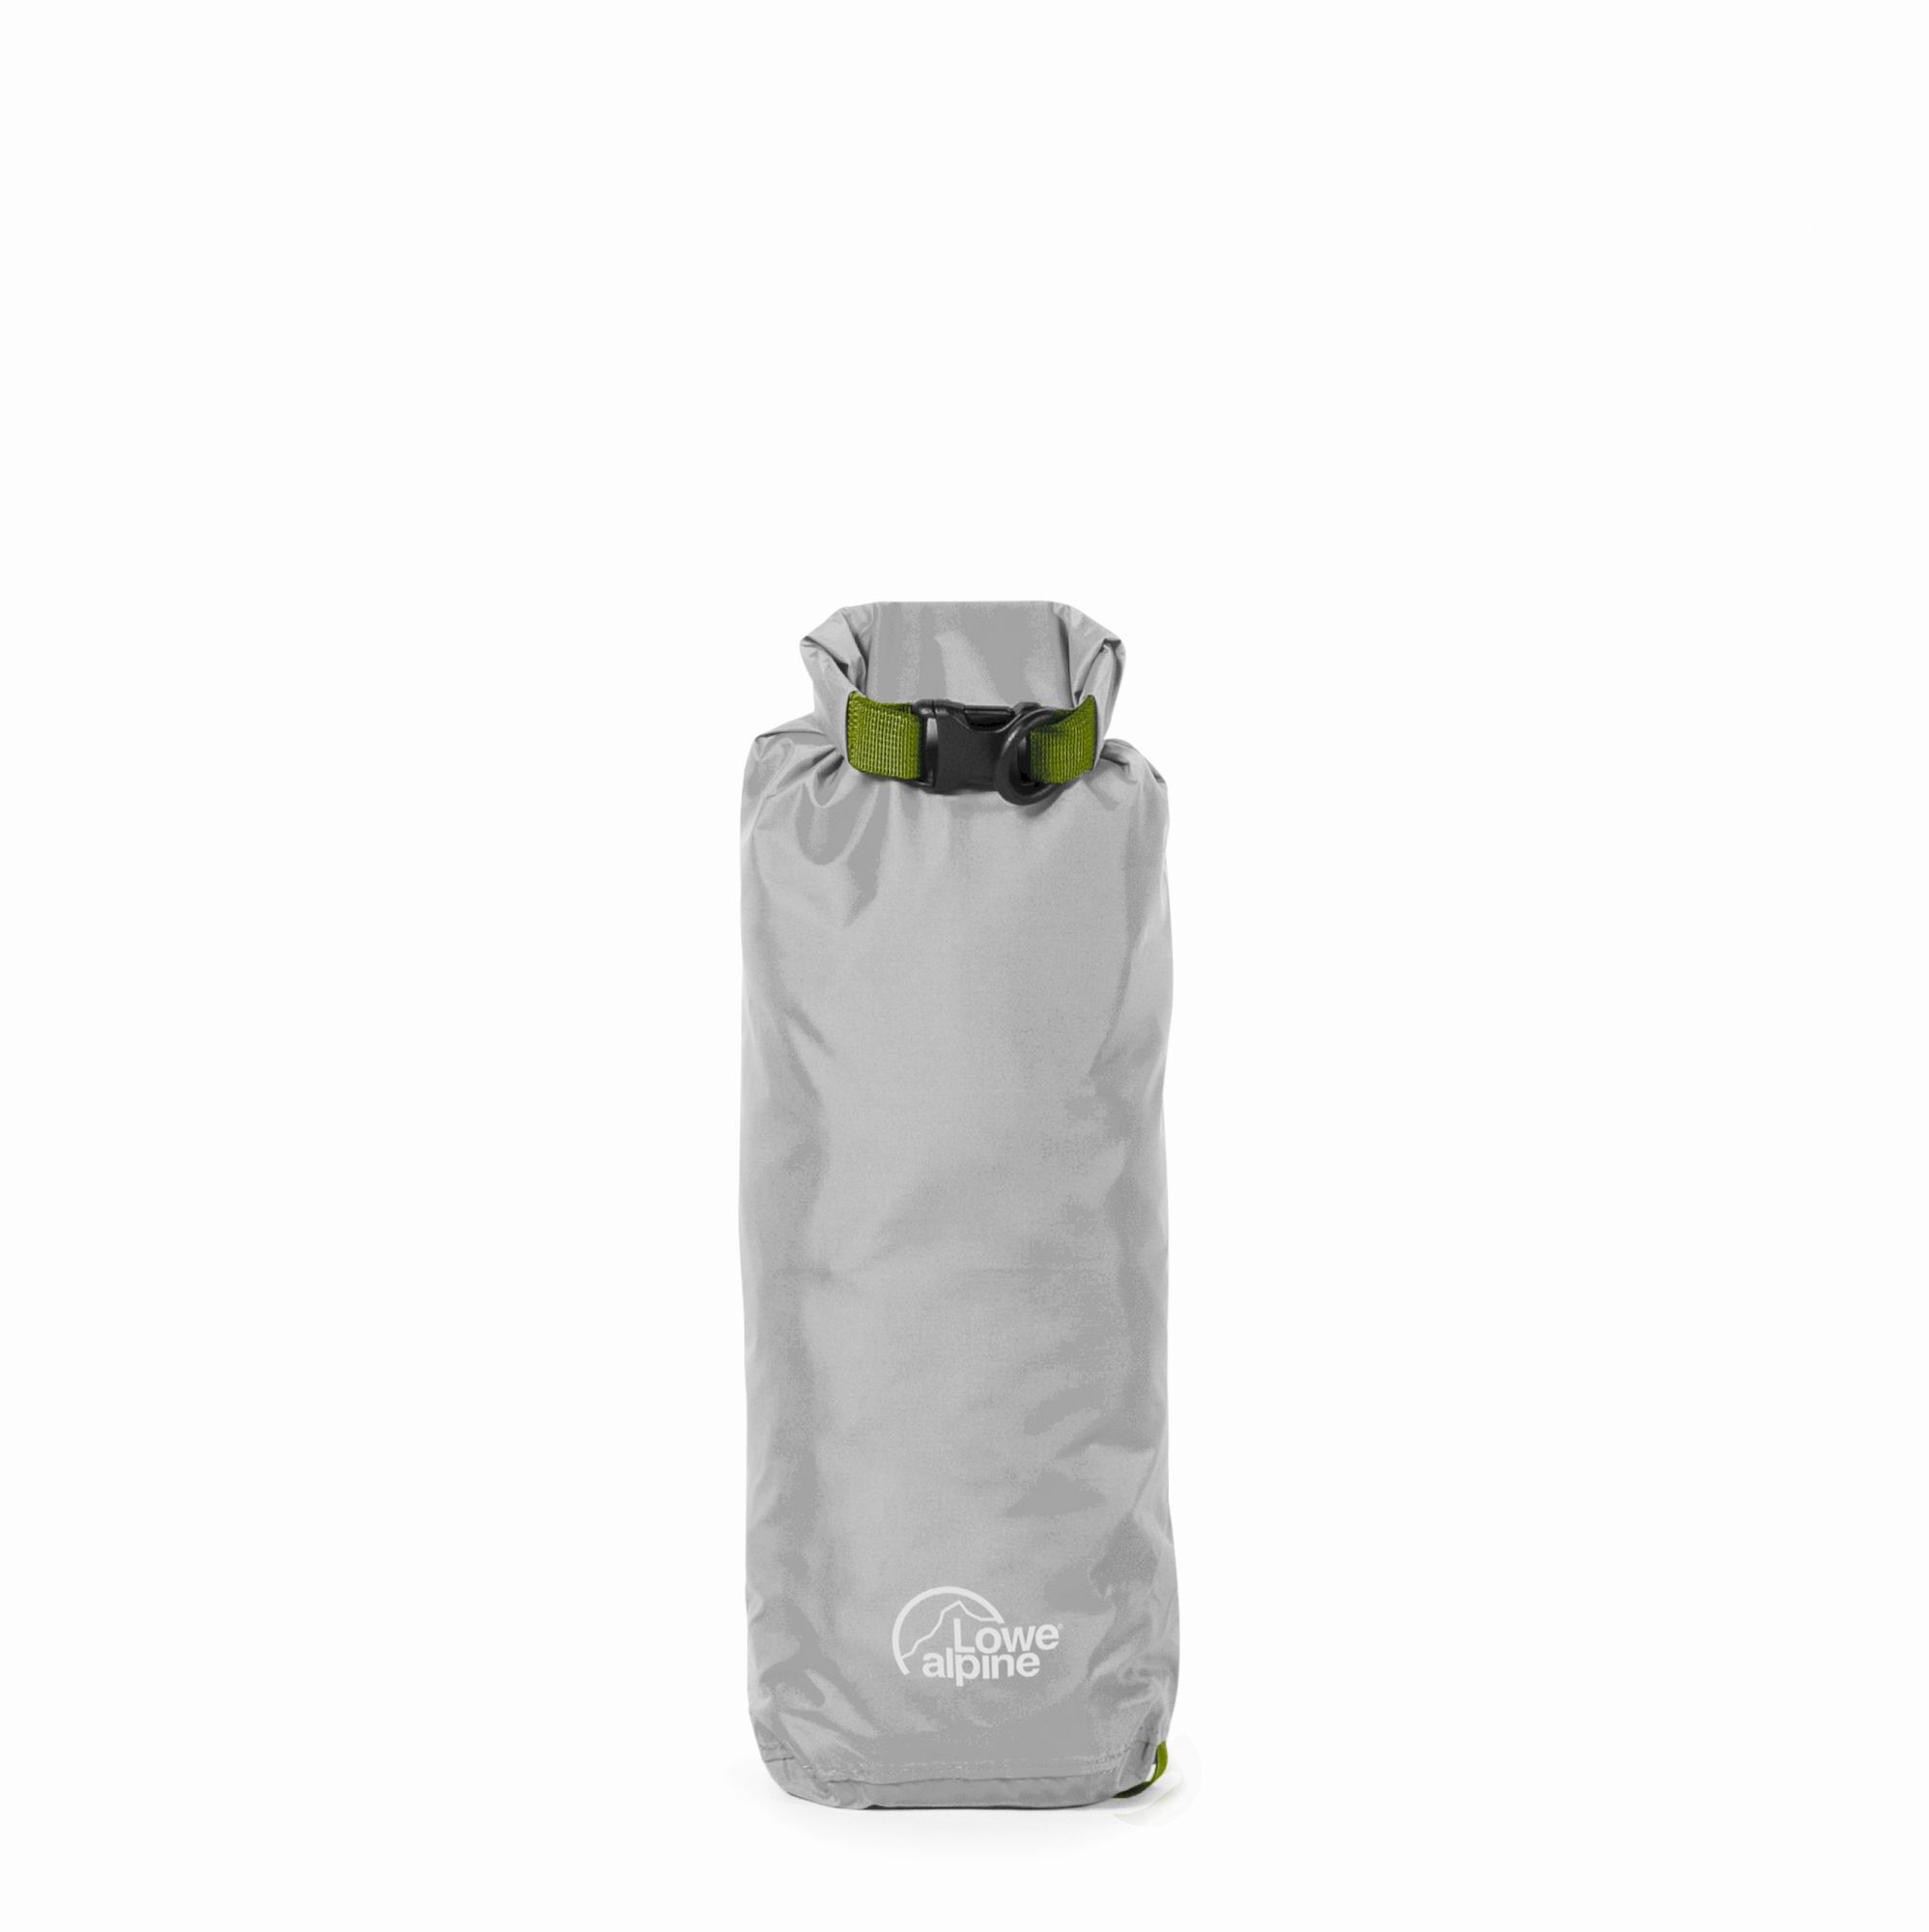 Lowe Alpine Ultralite Drysack - Bolsa impermeable | Hardloop